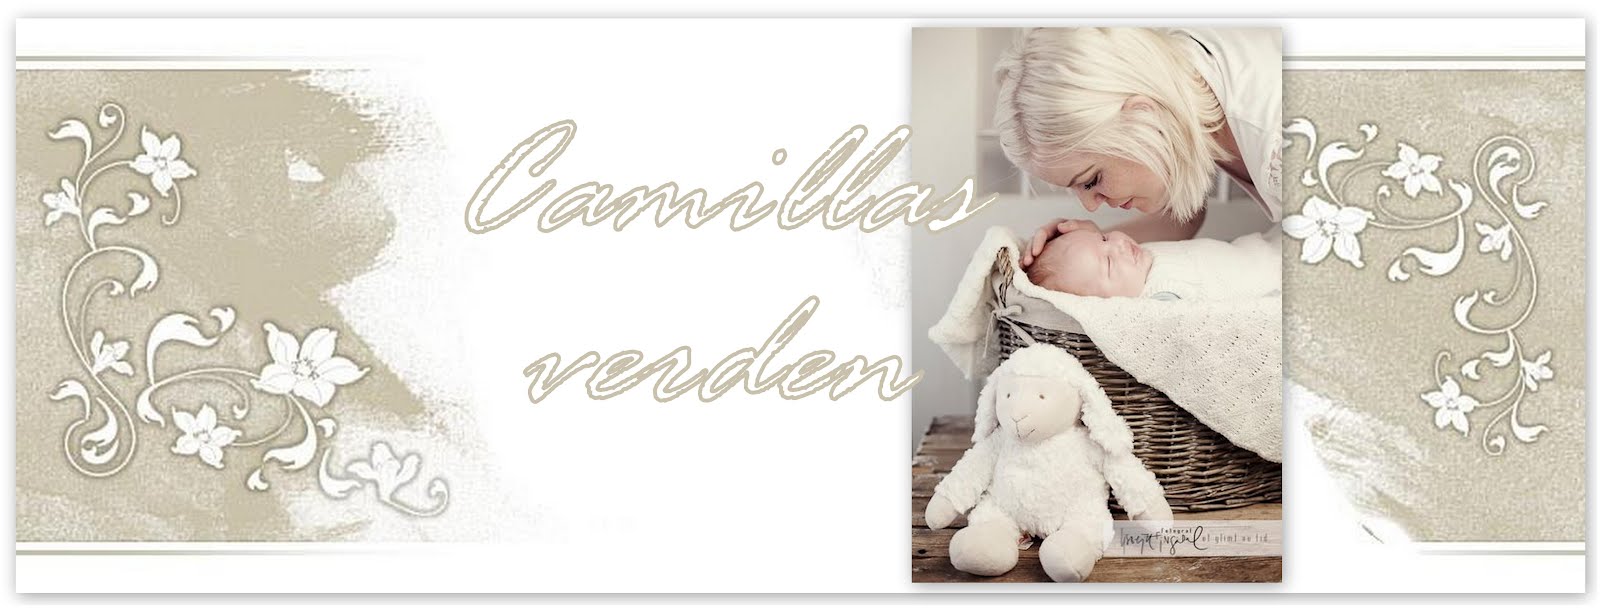 Camillas verden